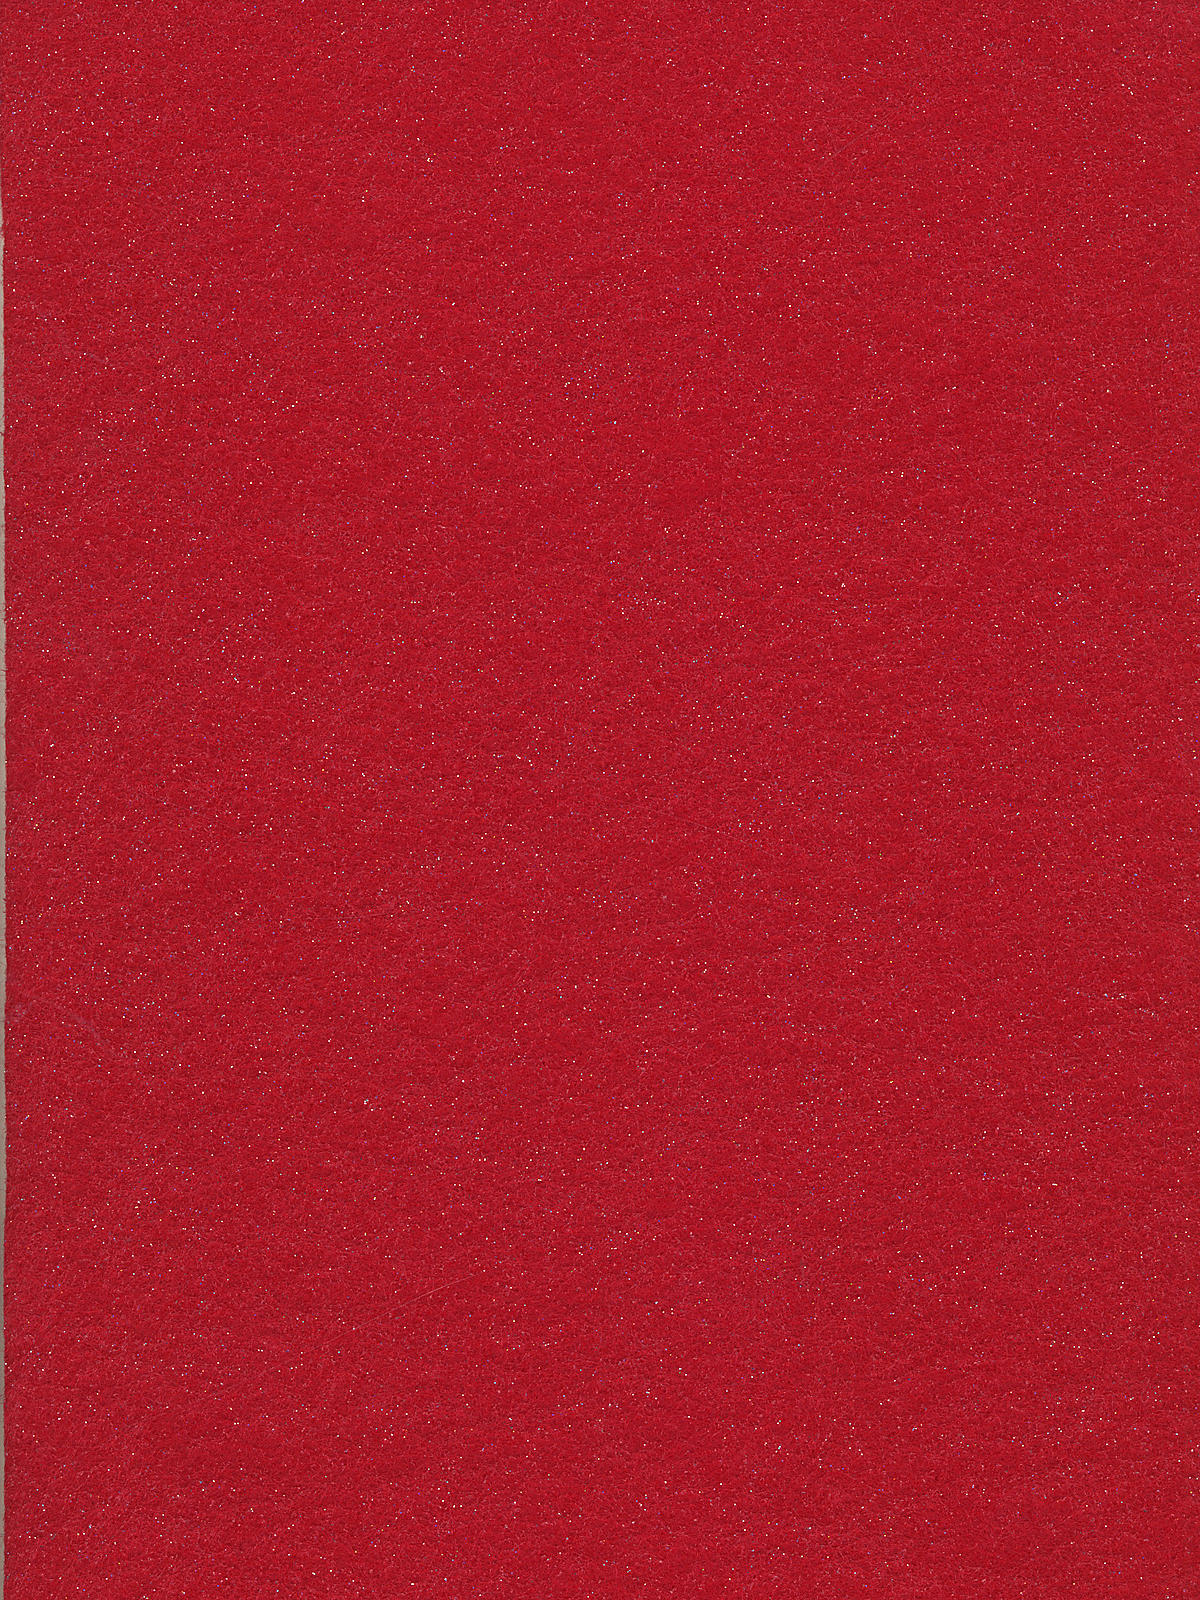 Glitterfelt 9 In. X 12 In. Sheet Red